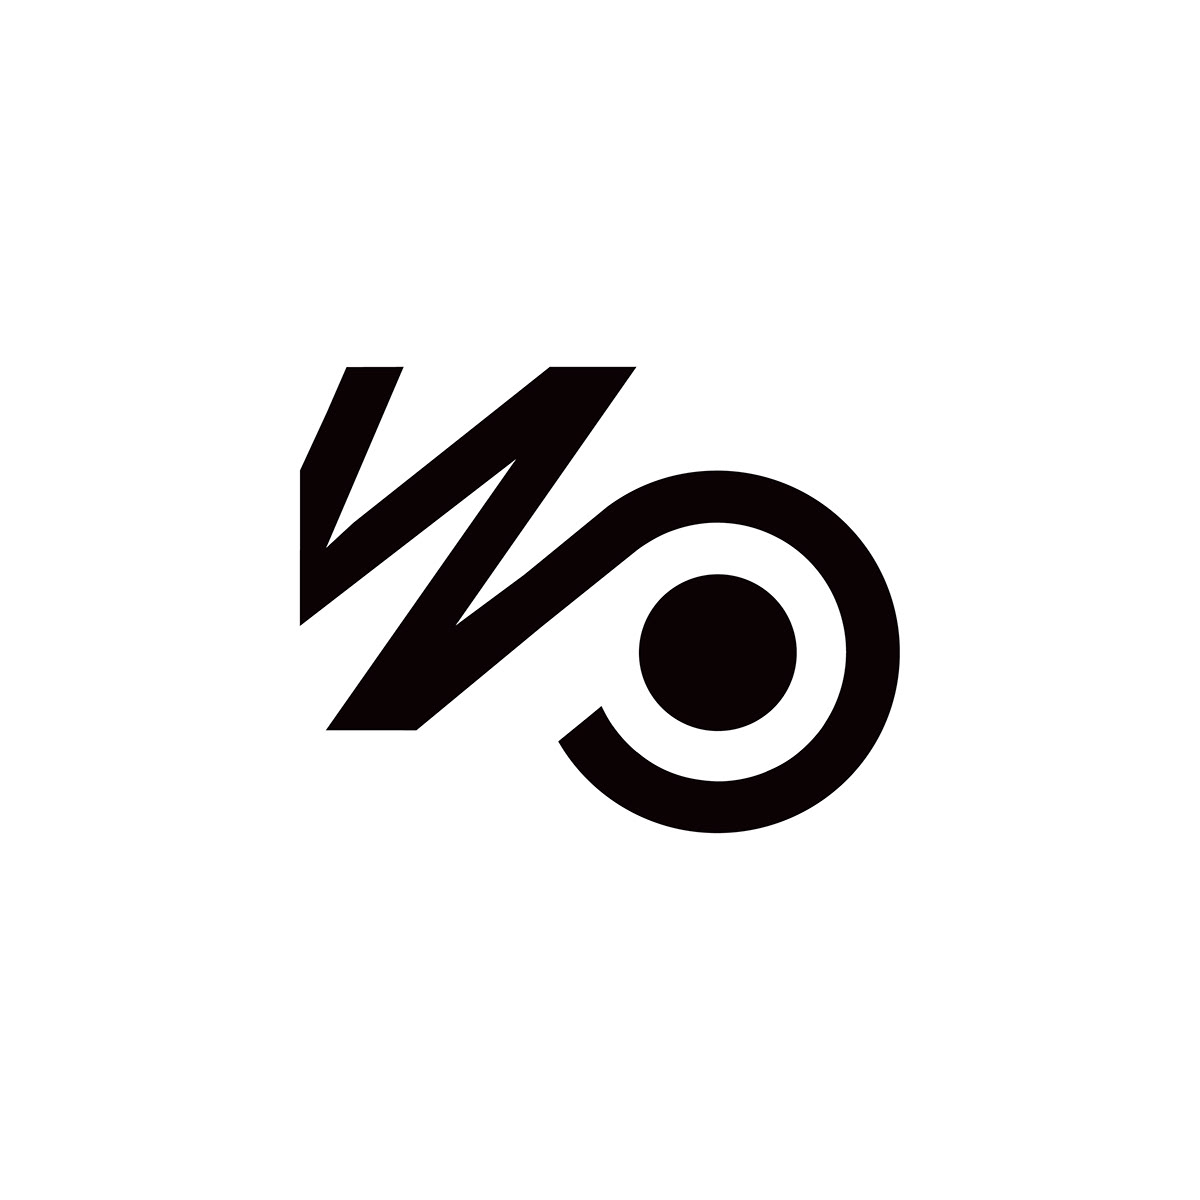 design identyfikacja wizualna klub księga znaku logo znak